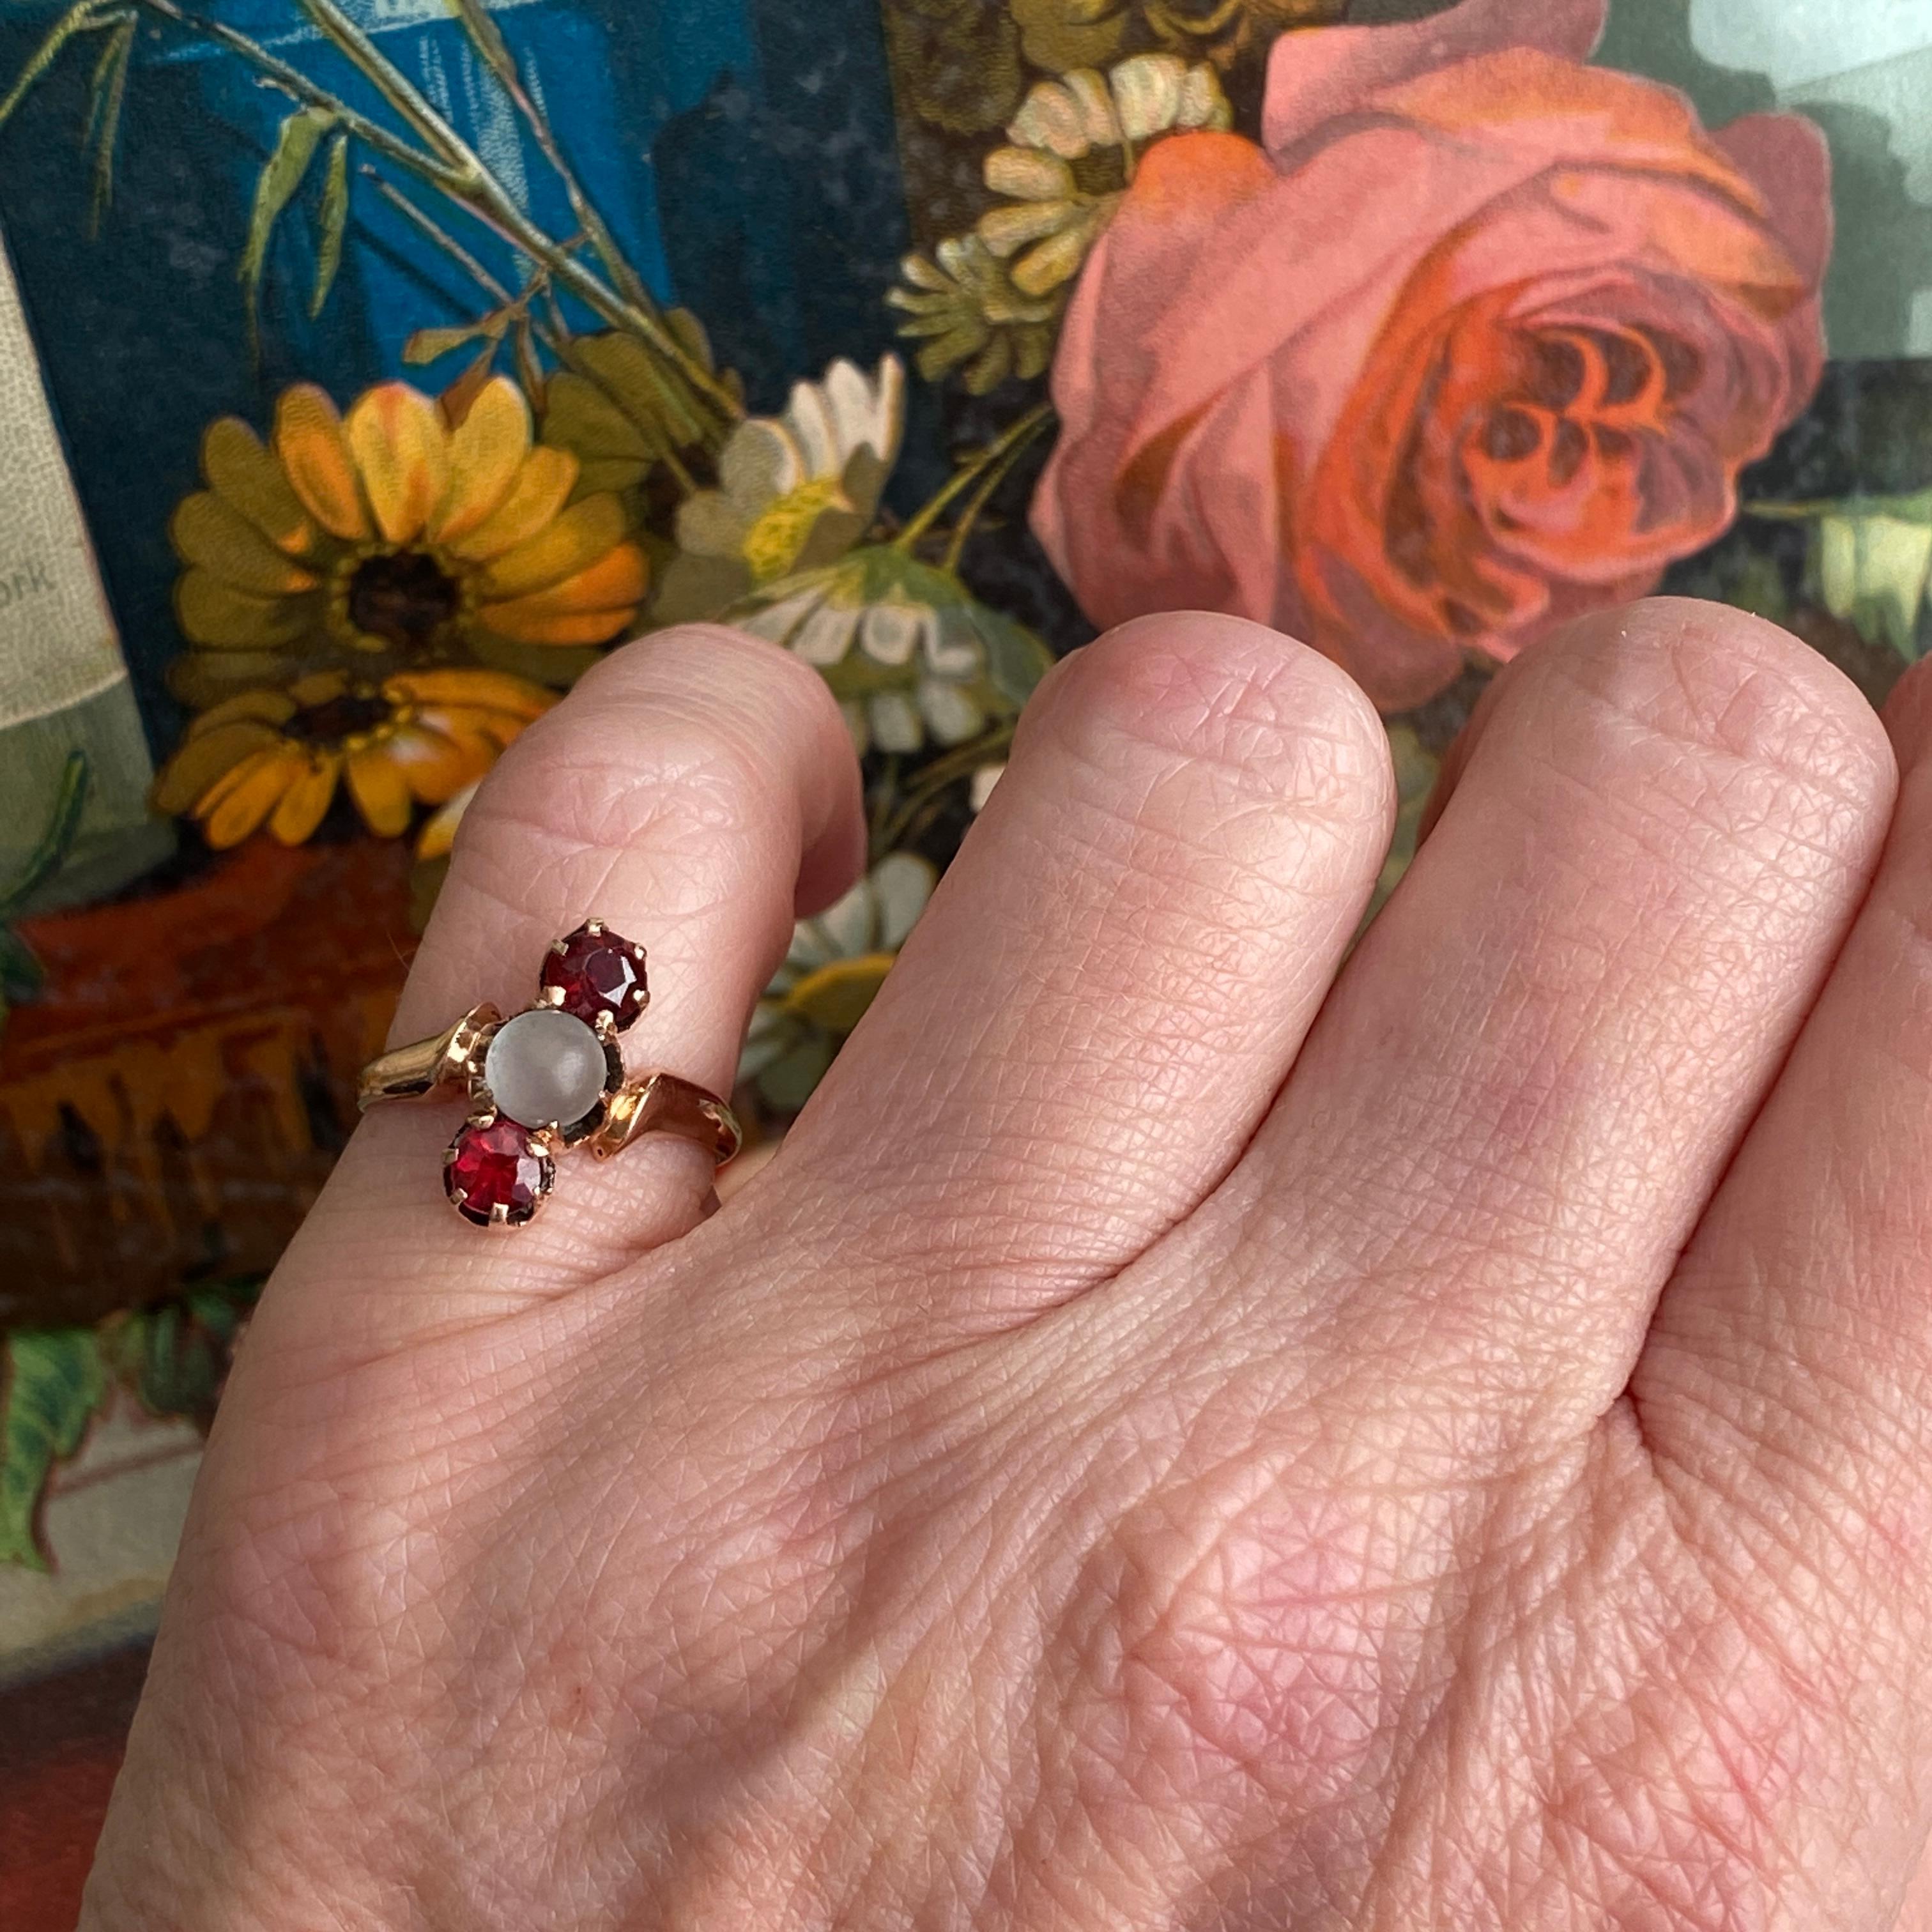 Einzelheiten:
Super süßer viktorianischer Ring mit Mondstein und roten Granaten. Klassisches Drei-Steine-Haus mit viel Charakter. Das Rot der Granate ist ein schönes, echtes Rot! Der Ring ist aus 14K Roségold und hat eine glatte Schulter. Der